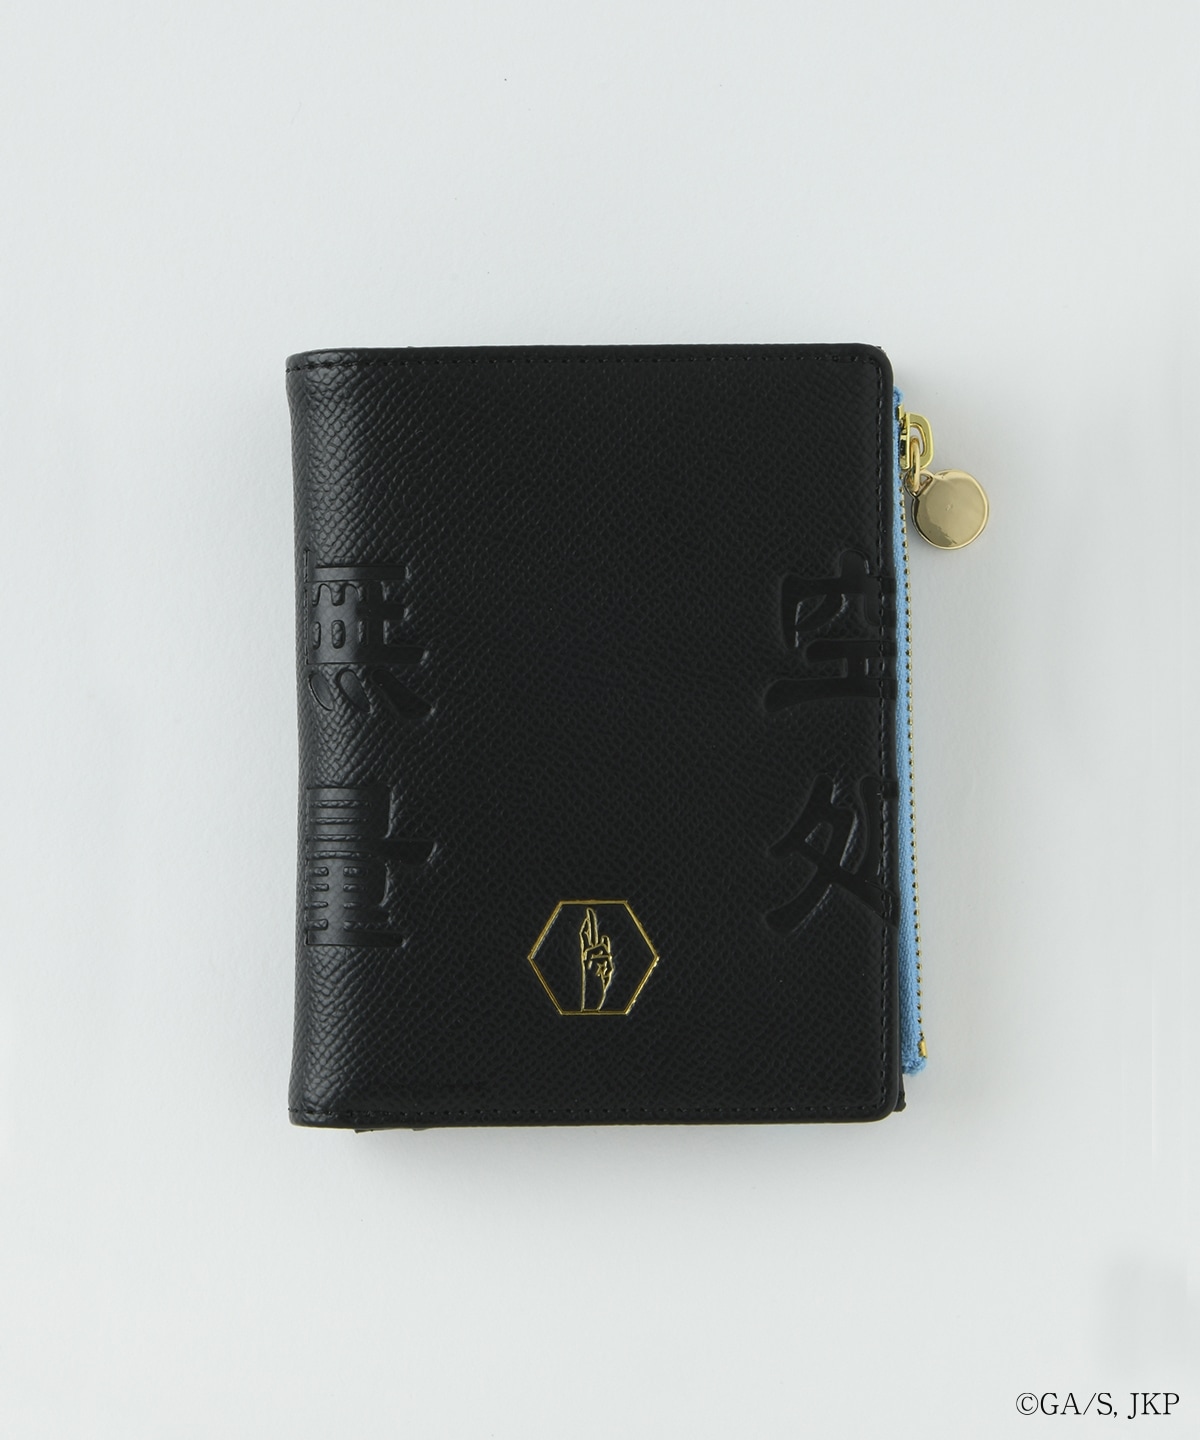 『呪術廻戦』コレクション「五条悟」コラボ折財布